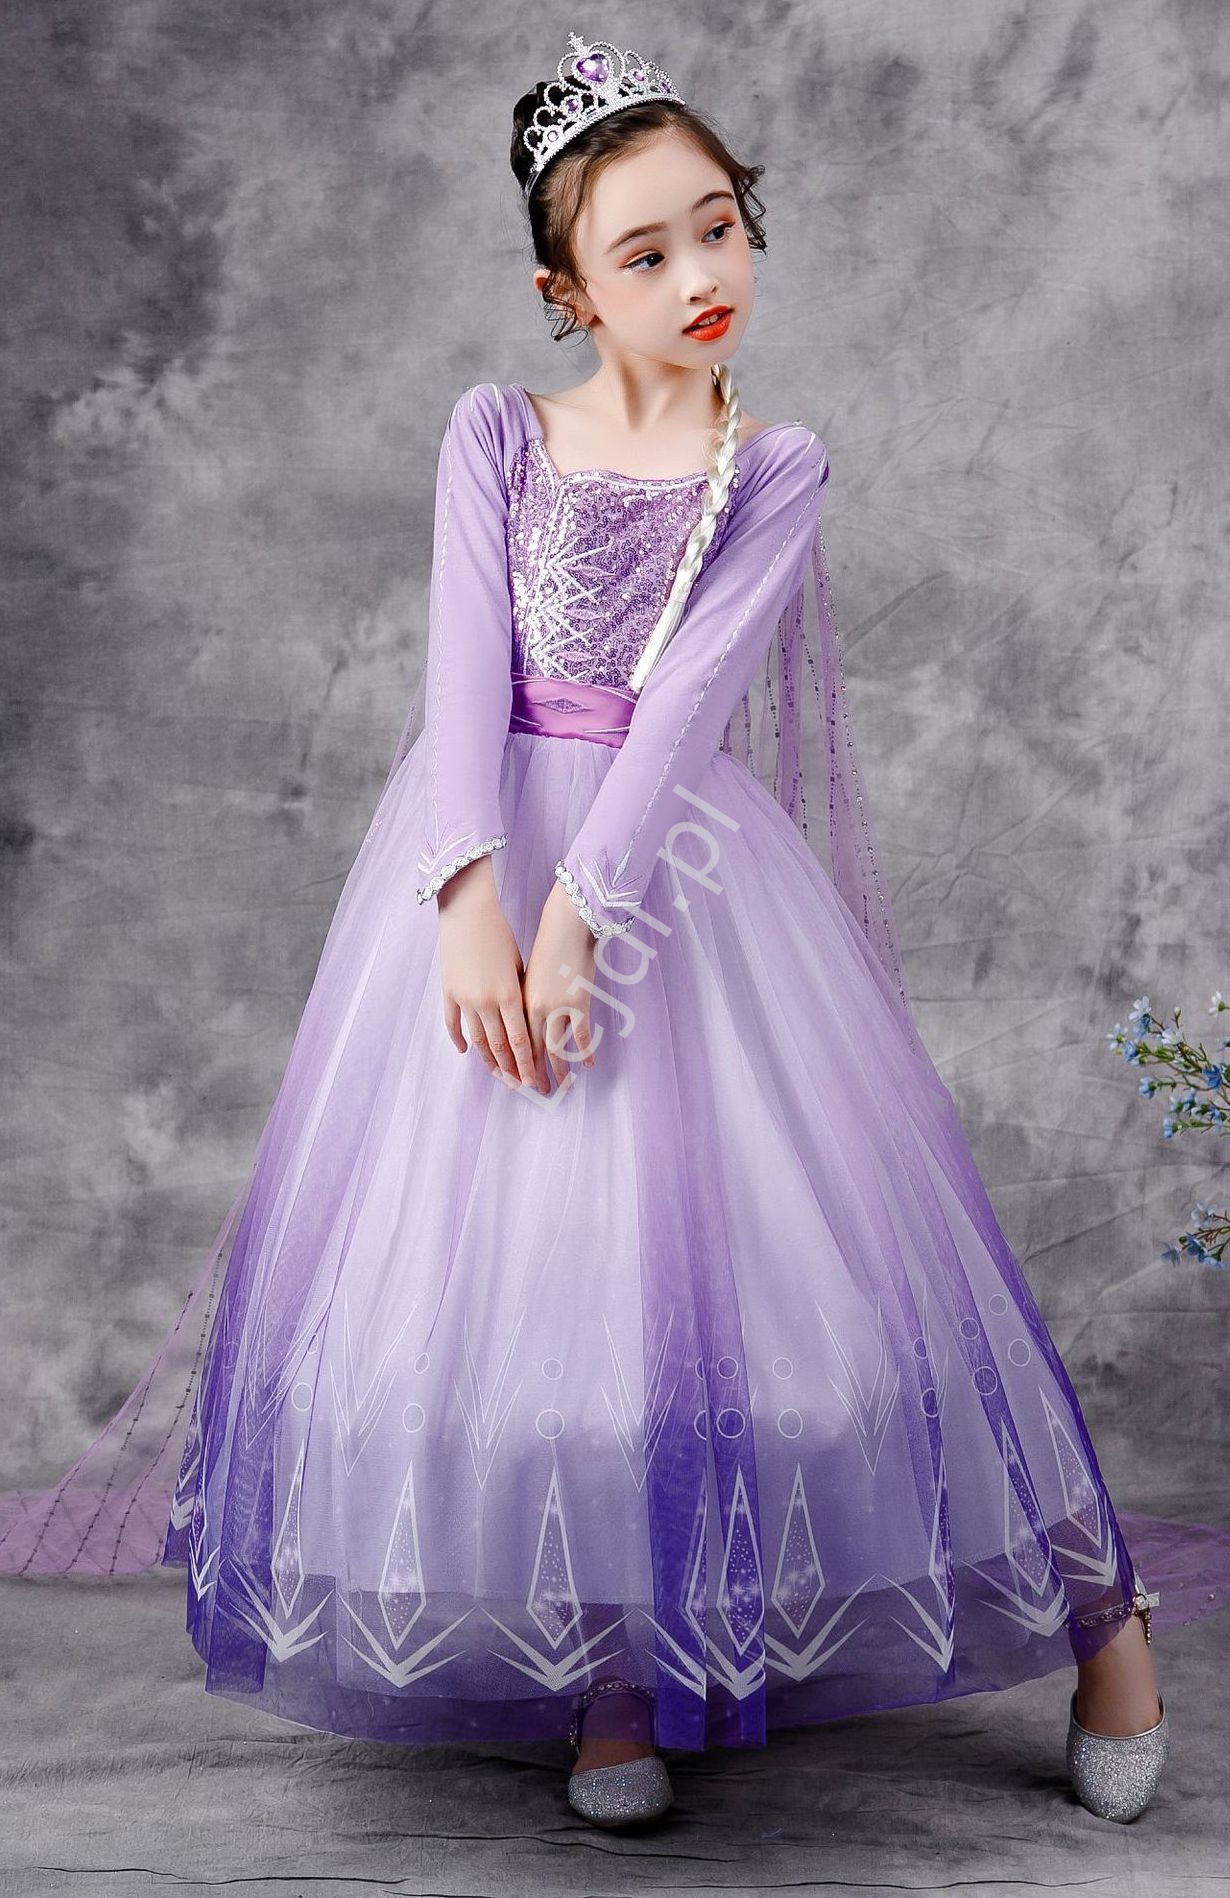 Karnawałowa dziecięca sukienka księżniczka, przebranie Elsa dla dziewczynki , Frozen 1740 - Lejdi